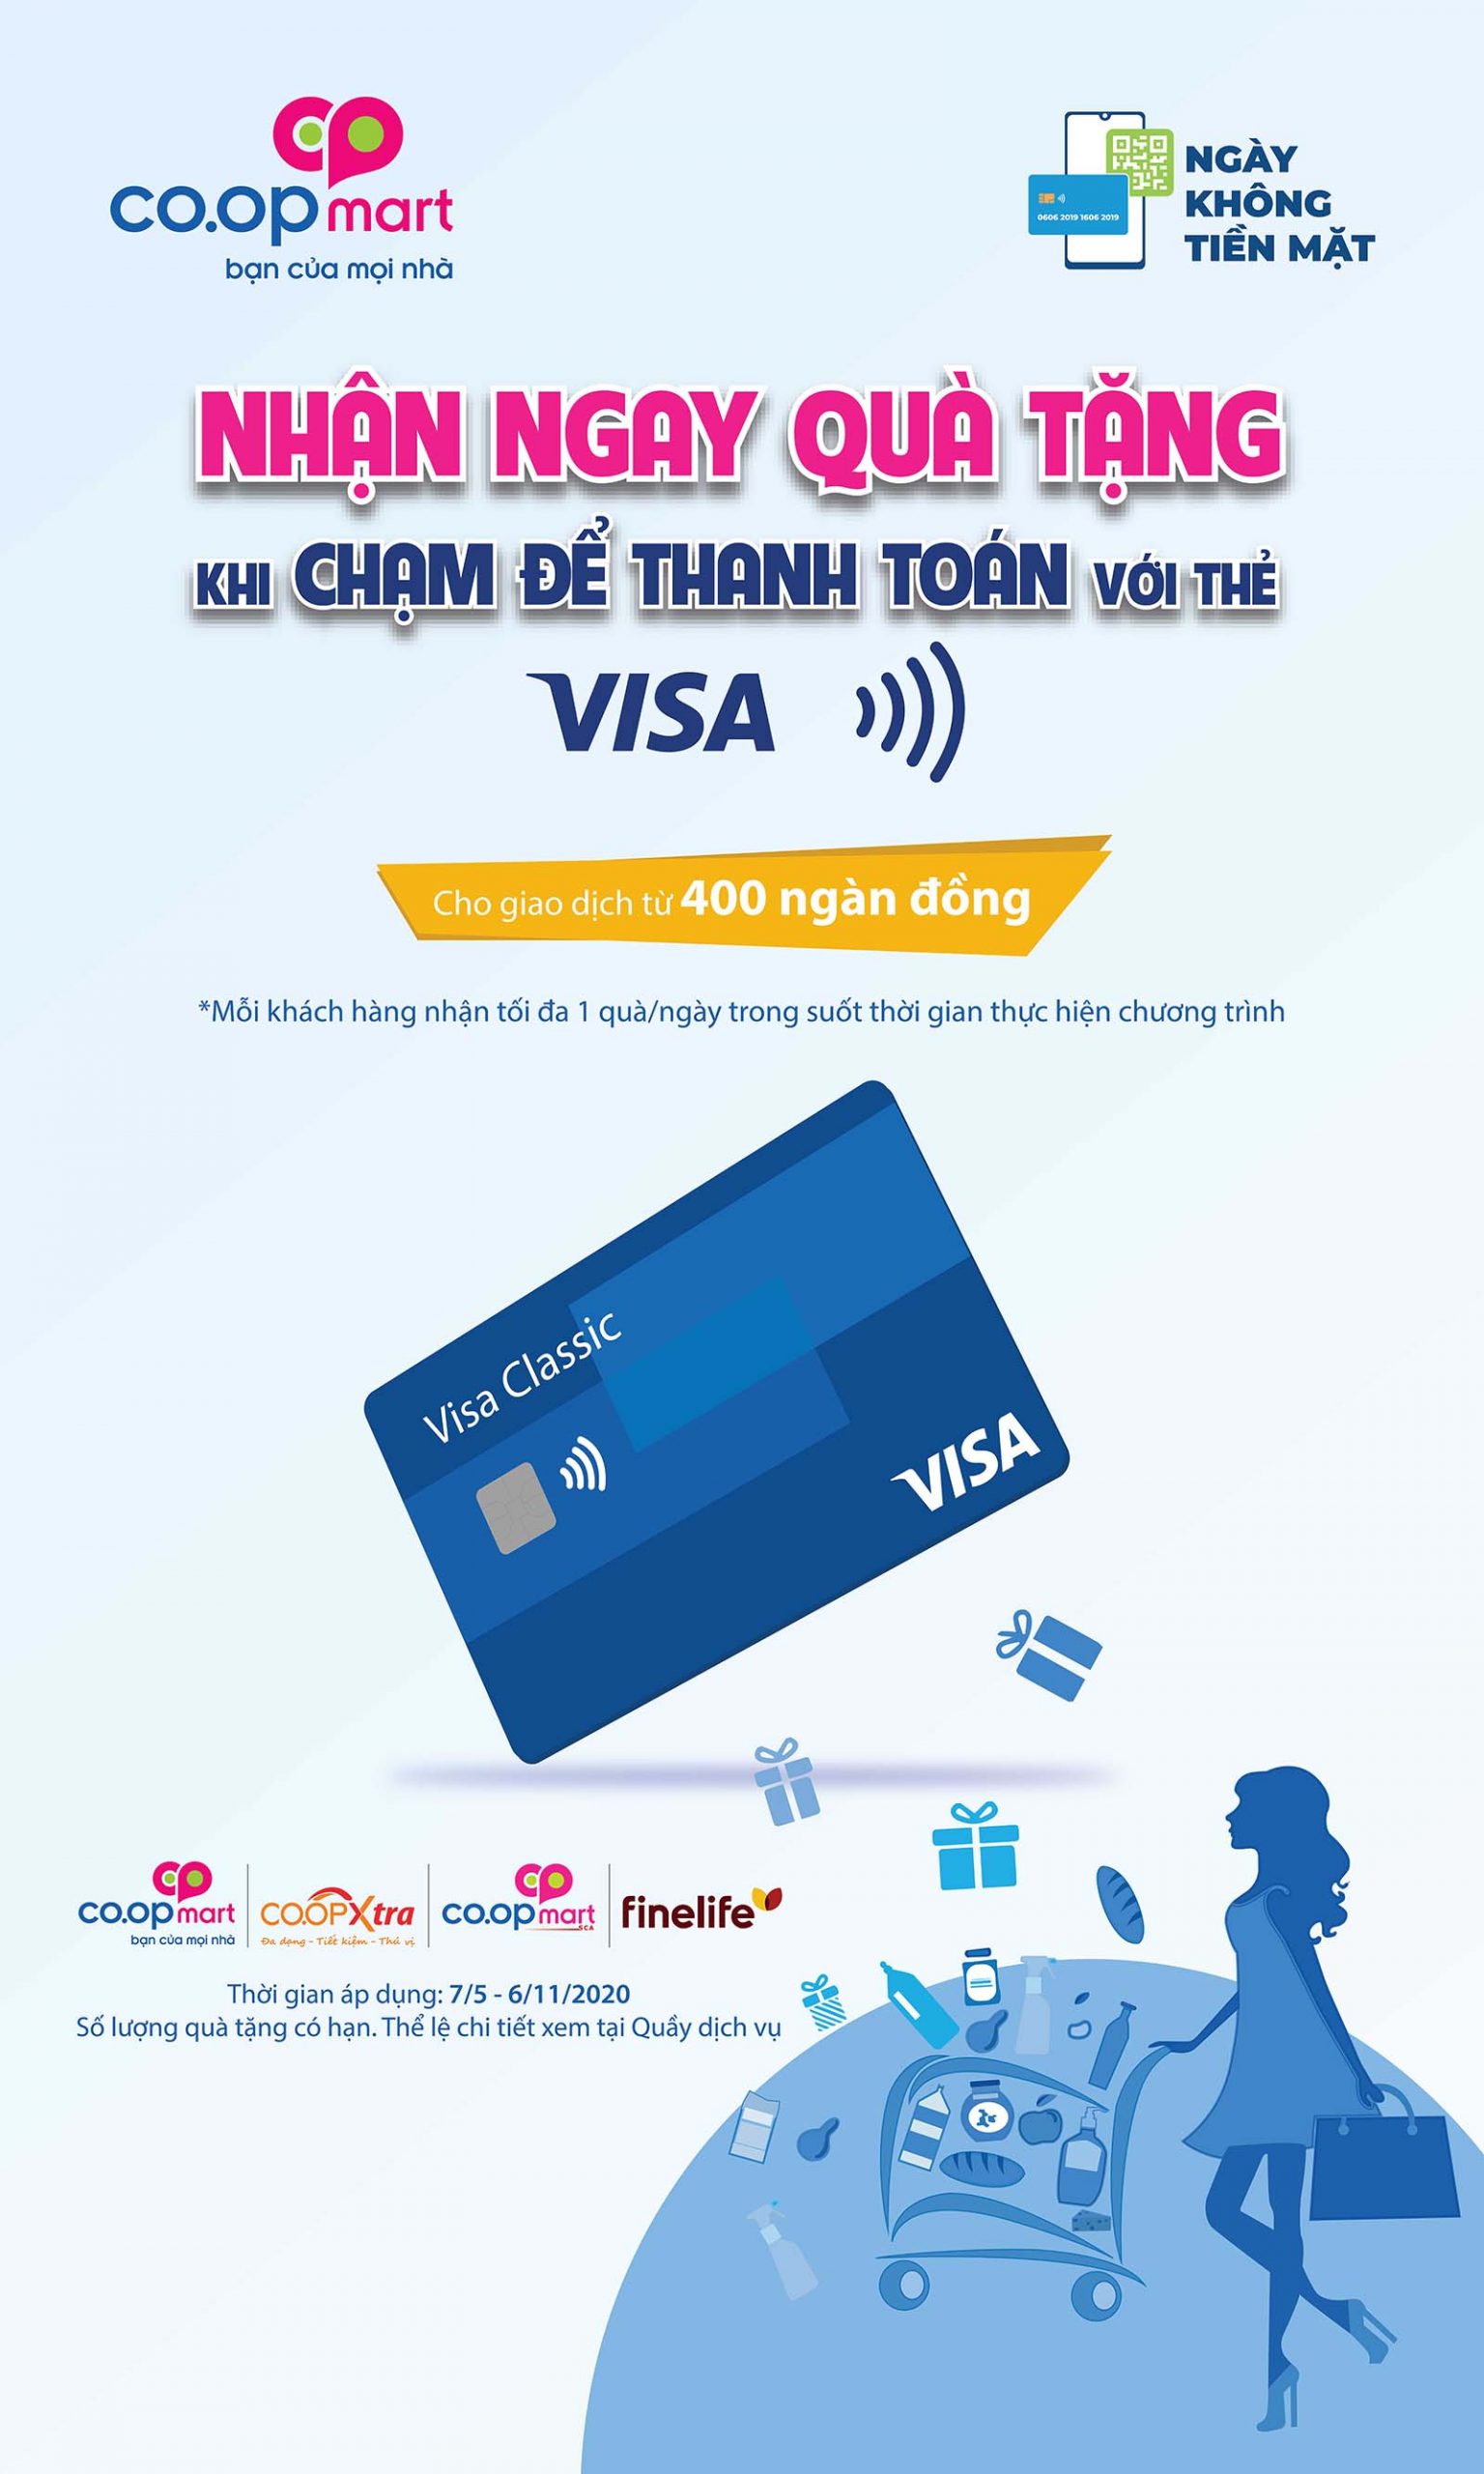 Visa đồng hành cùng “Ngày không tiền mặt” thúc đẩy thanh toán không tiền mặt tại Việt Nam